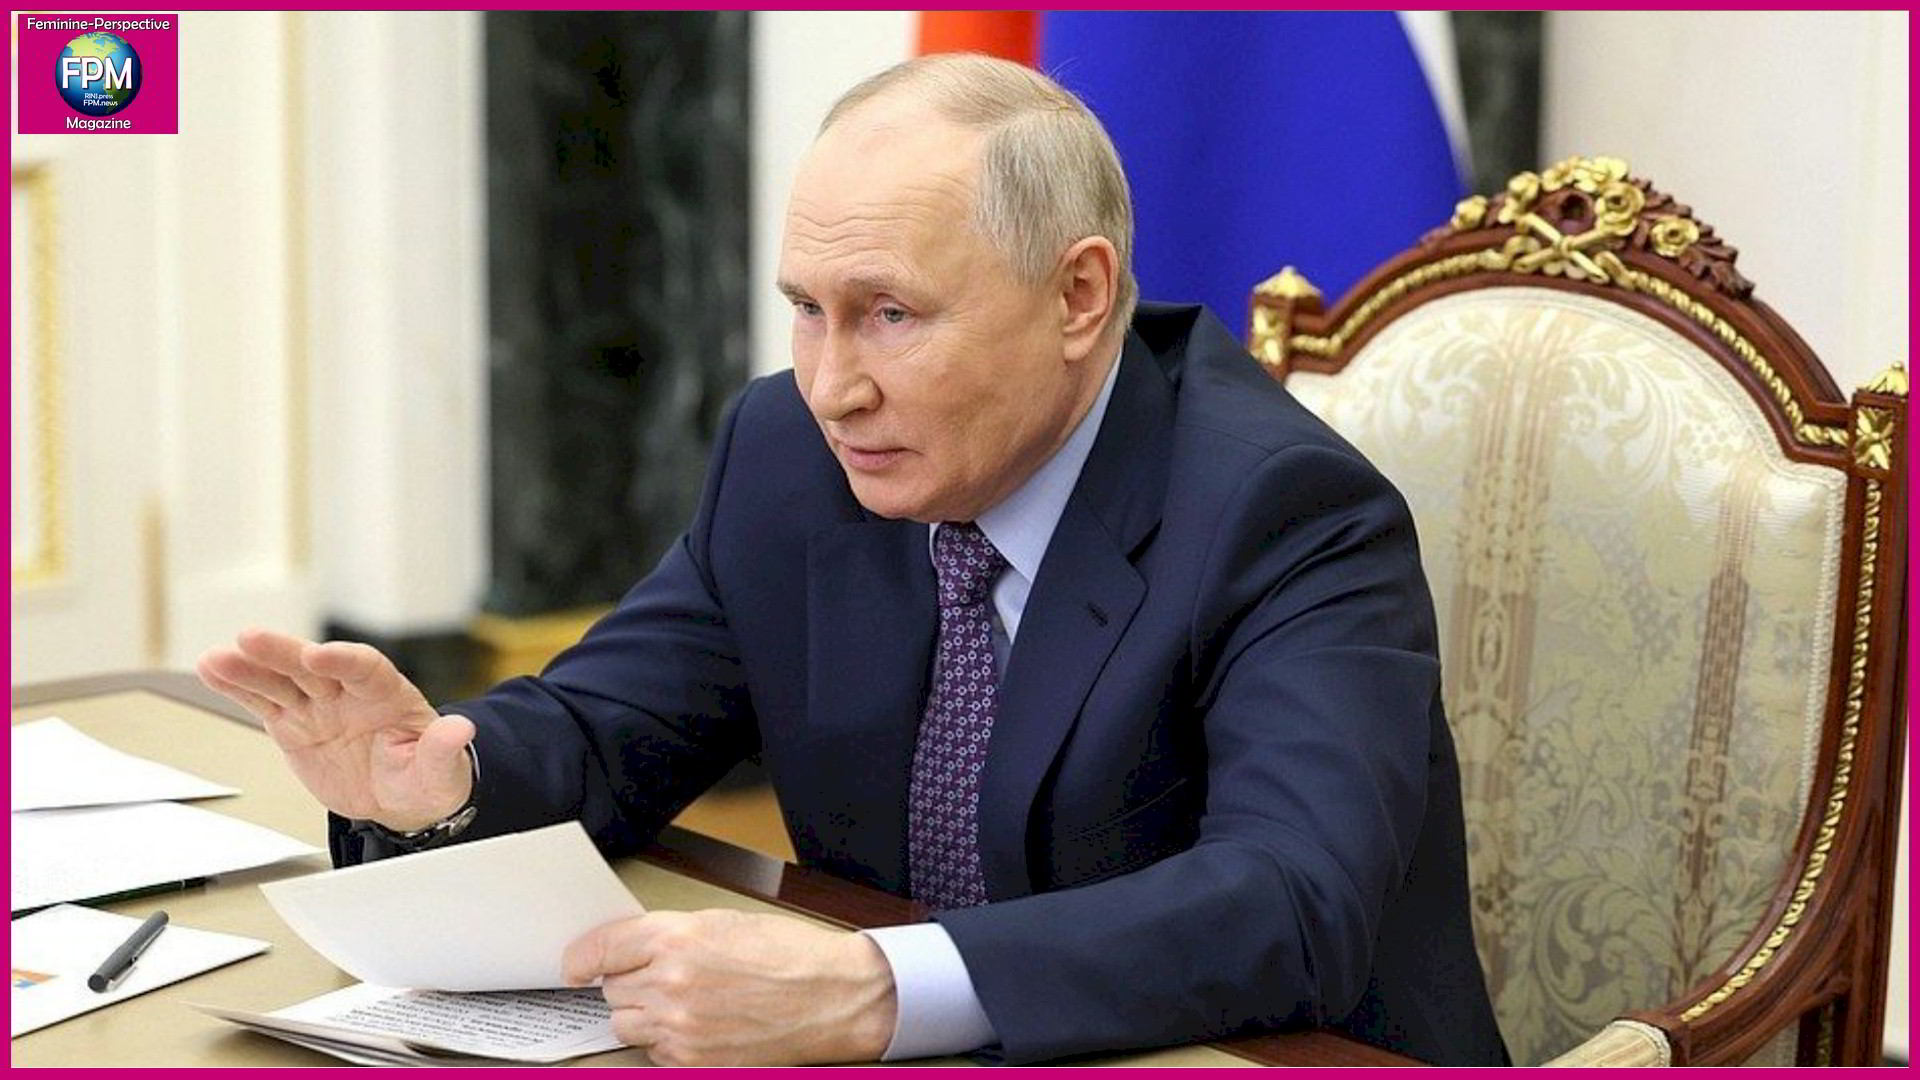 Tucker Carlson Interviews Russian Federation President Vladimir Putin